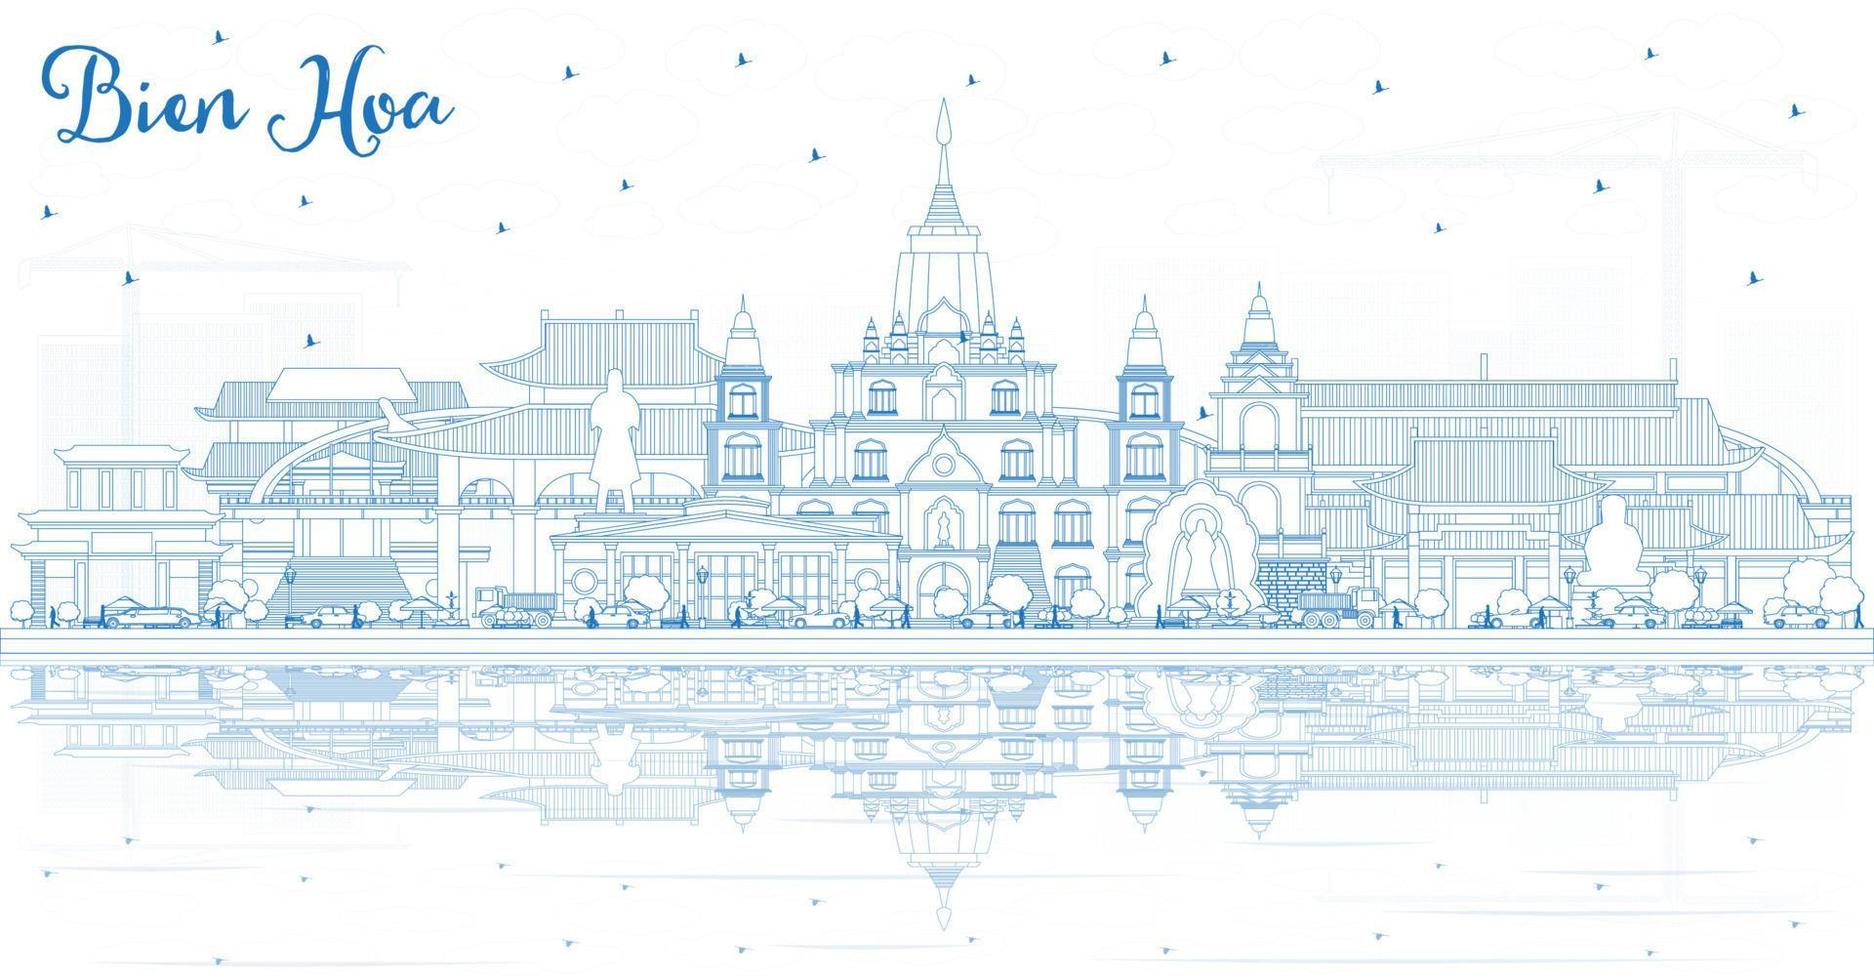 schets bien hoezo Vietnam stad horizon met blauw gebouwen en reflecties. vector